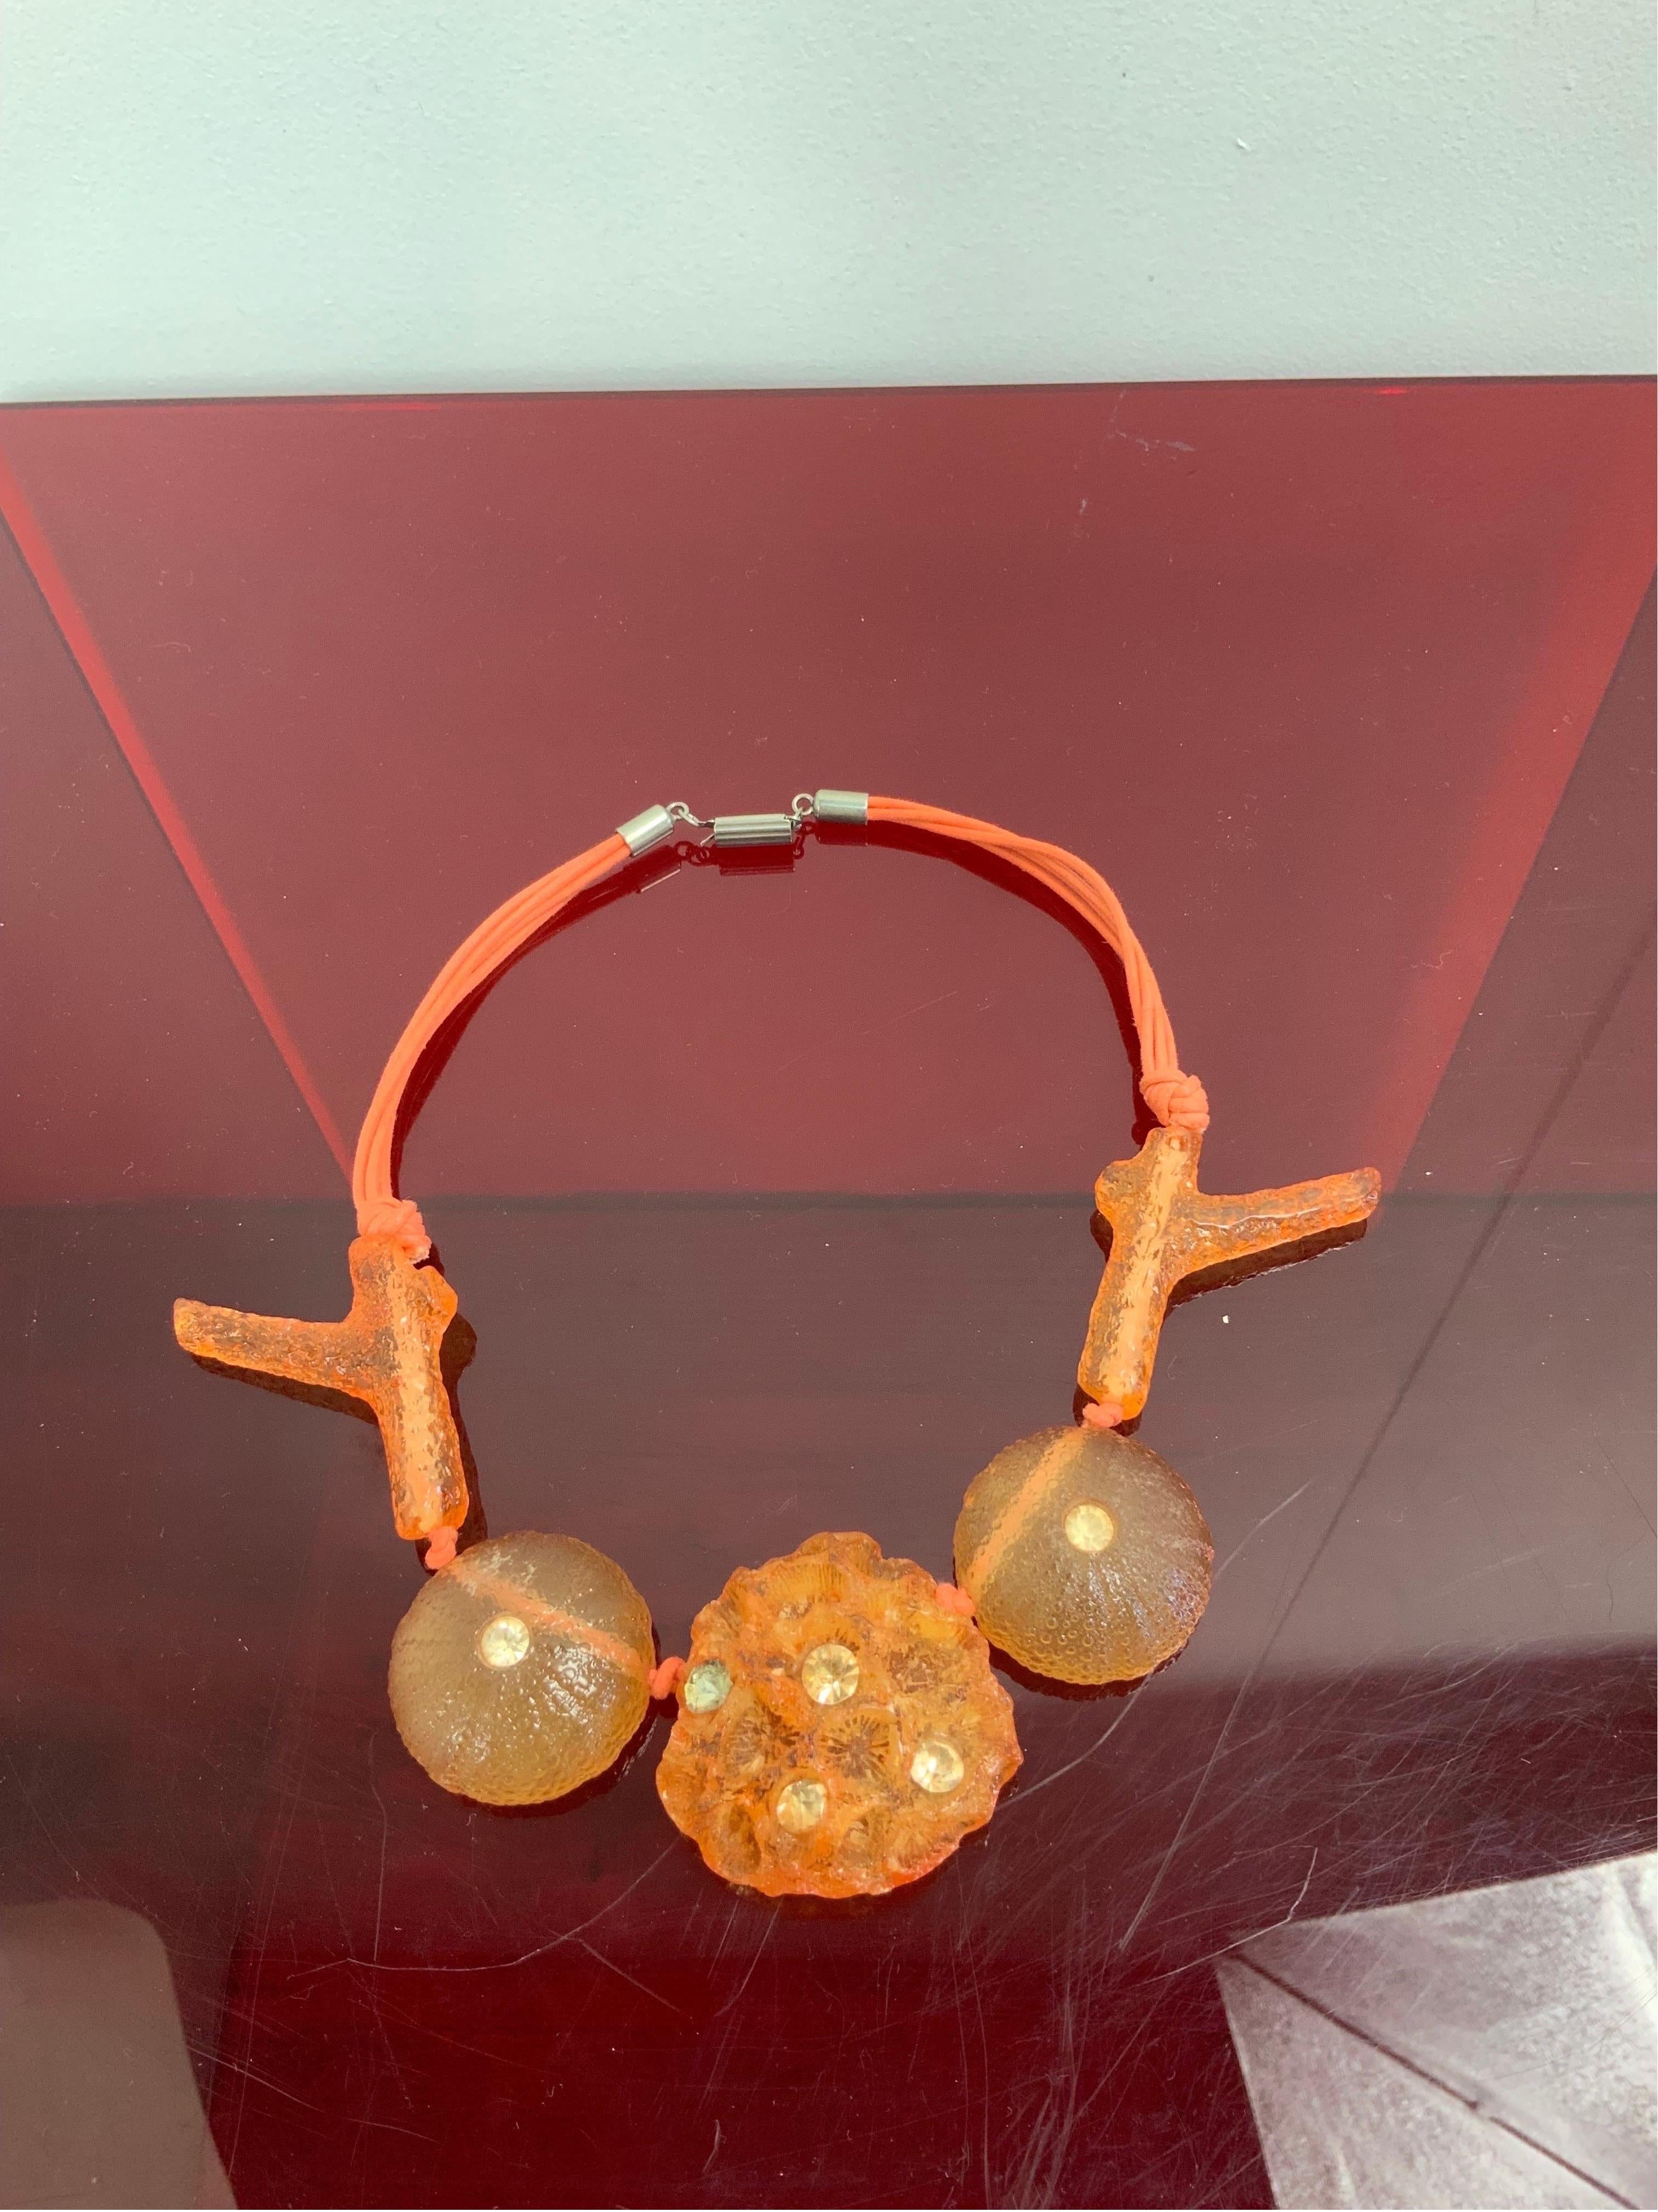 Ugo Correani-Halskette.
Berühmter italienischer Schmuckdesigner.
Thema Marine
Aus orangefarbenem Harz und Perlen.
23 cm lang.
Es ist in gutem Allgemeinzustand und weist normale Gebrauchsspuren auf.